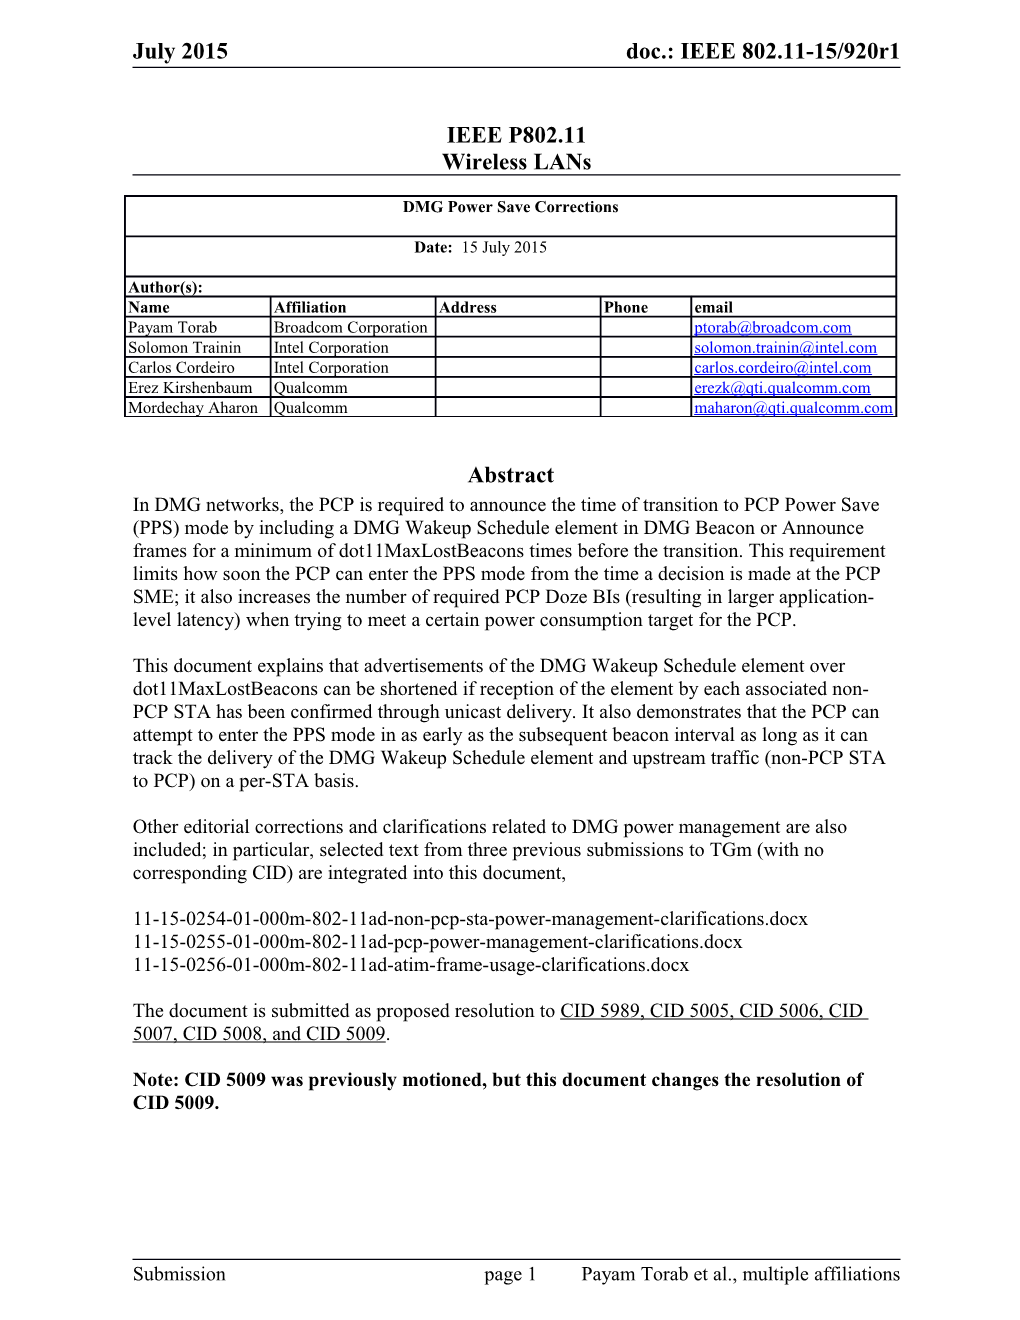 IEEE P802.11 Wireless Lans s56